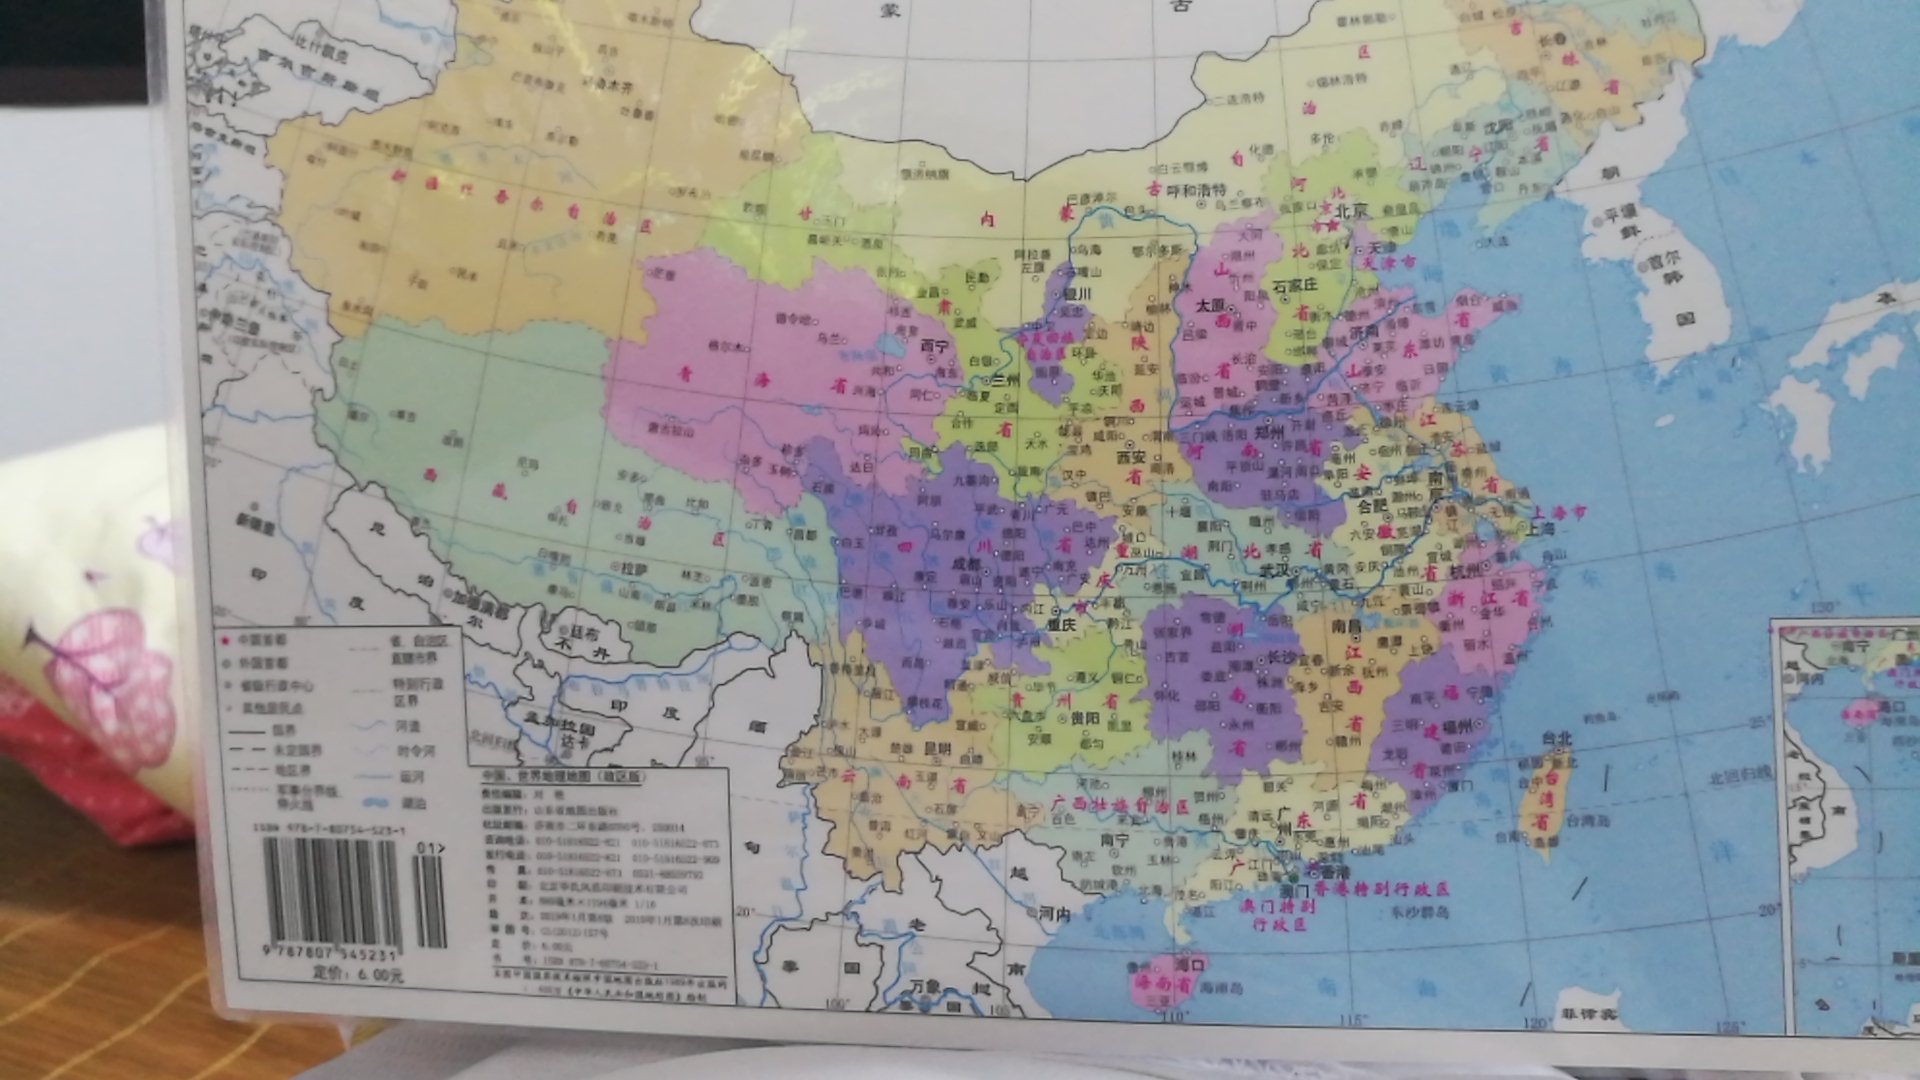 中国地图，世界地图，塑装版本，很好，不拍会弄烂了，大小合适，80公分长，适合携带方便